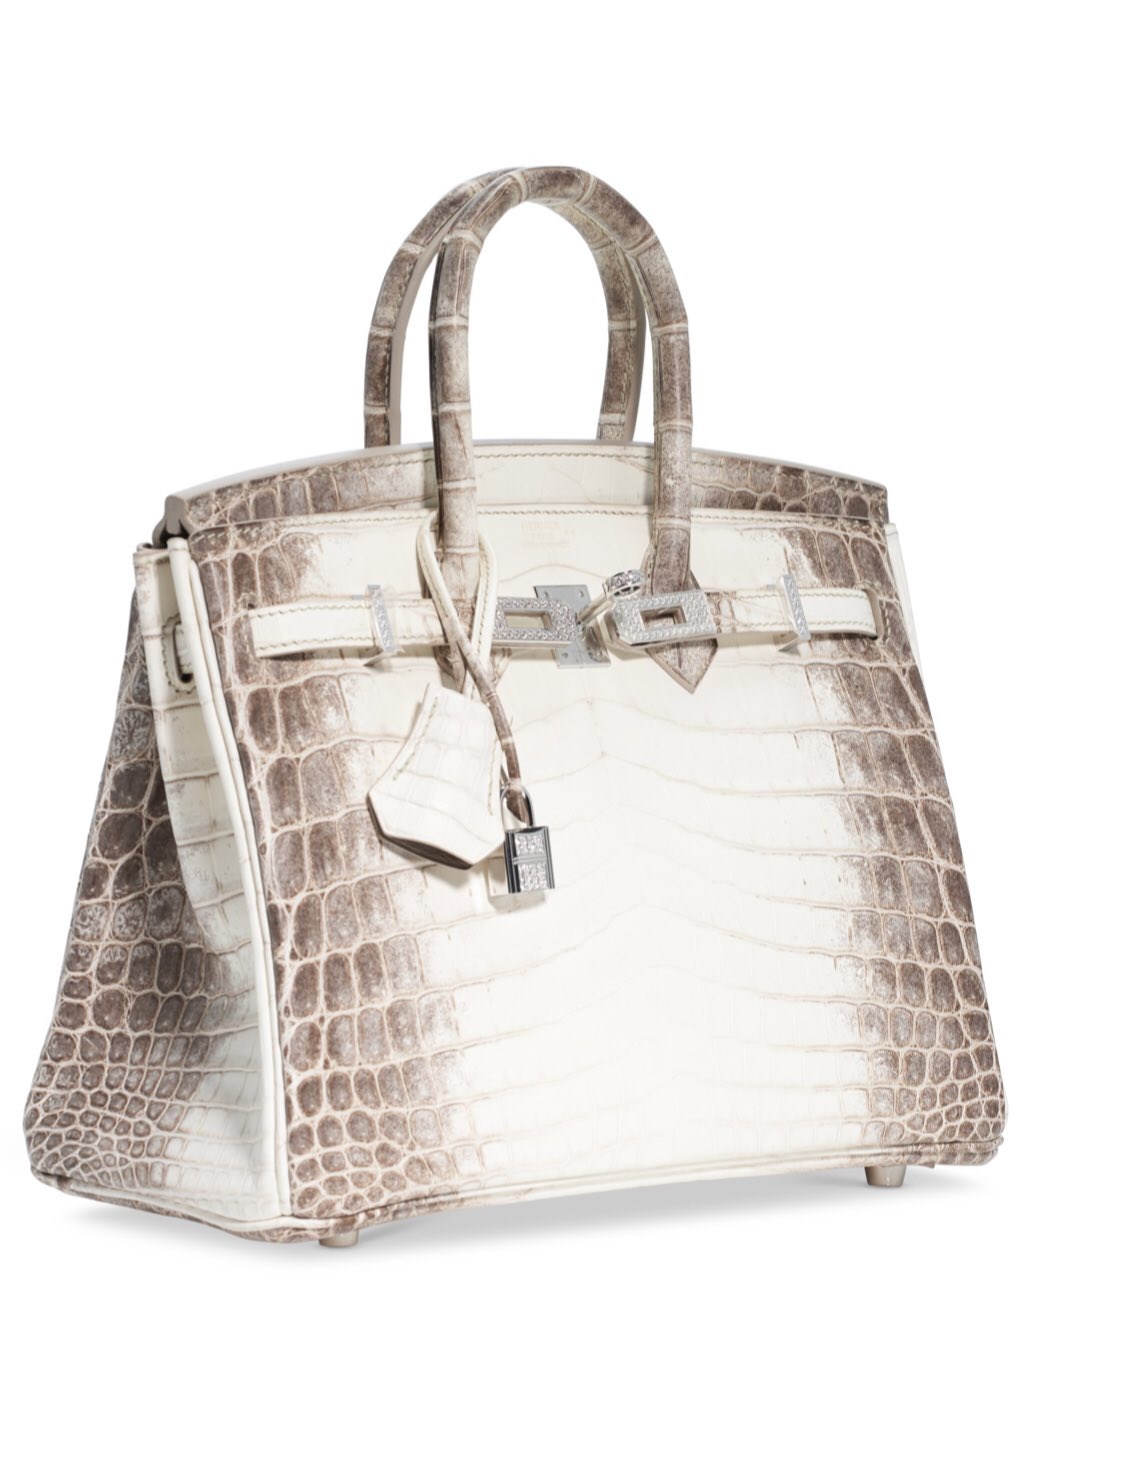 Hermes Birkin Bag Sold at Auction for Over $300,000